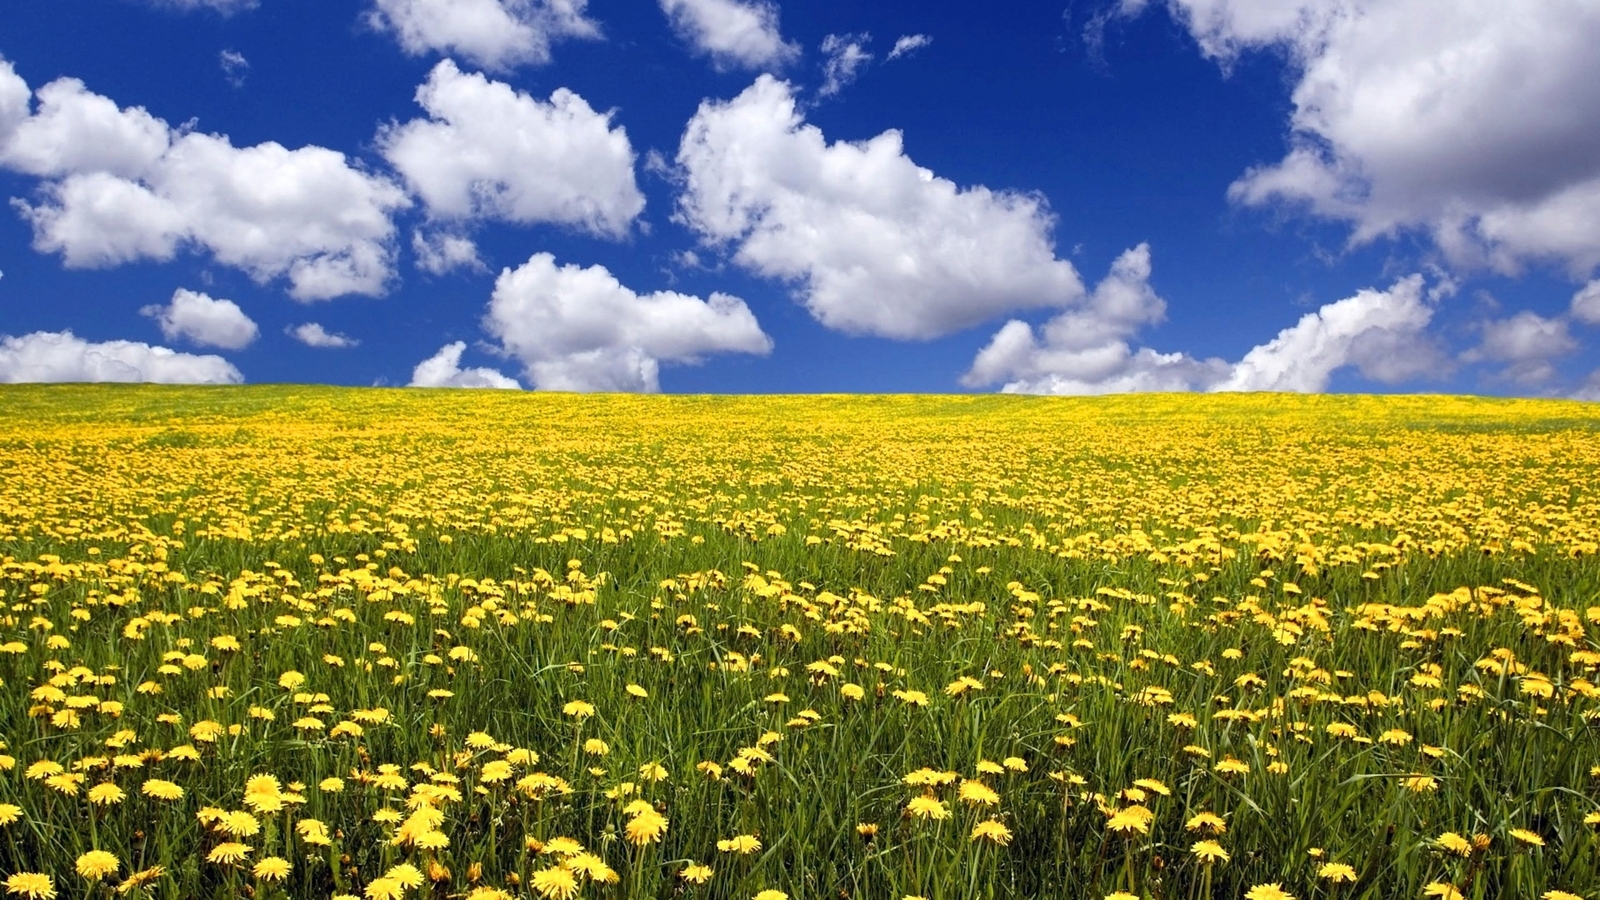 Картинка: Поляна, поле, одуванчики, жёлтые, цветы, трава, небо, облака, день, лето